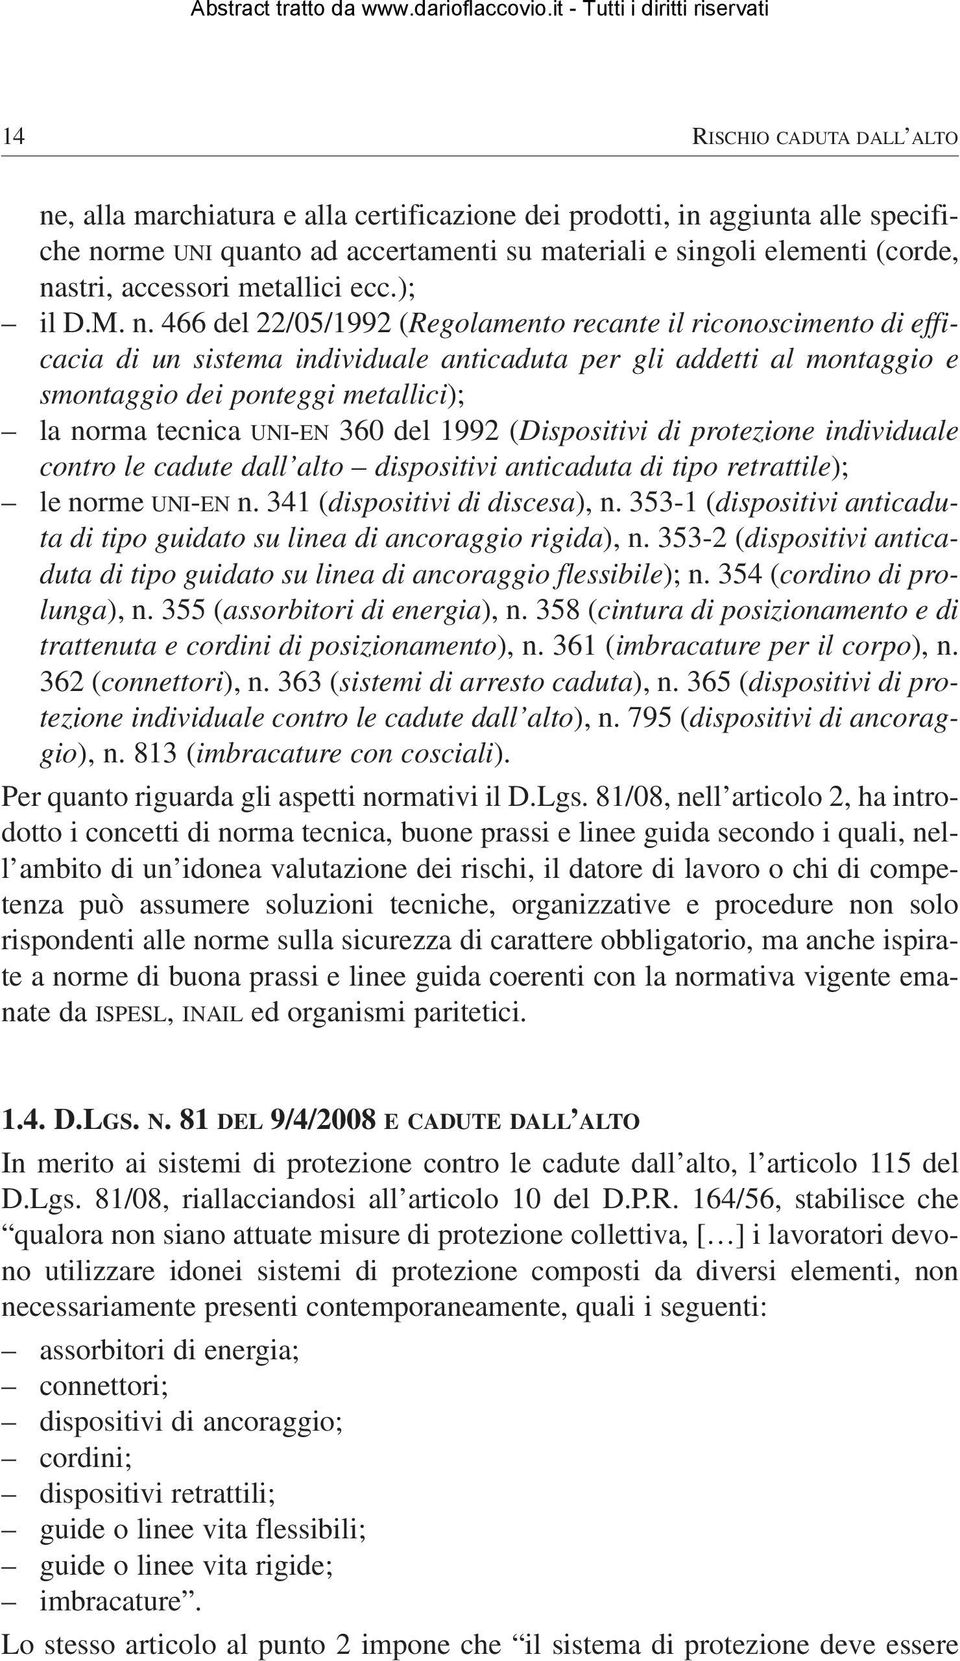 466 del 22/05/1992 (Regolamento recante il riconoscimento di efficacia di un sistema individuale anticaduta per gli addetti al montaggio e smontaggio dei ponteggi metallici); la norma tecnica UNI-EN